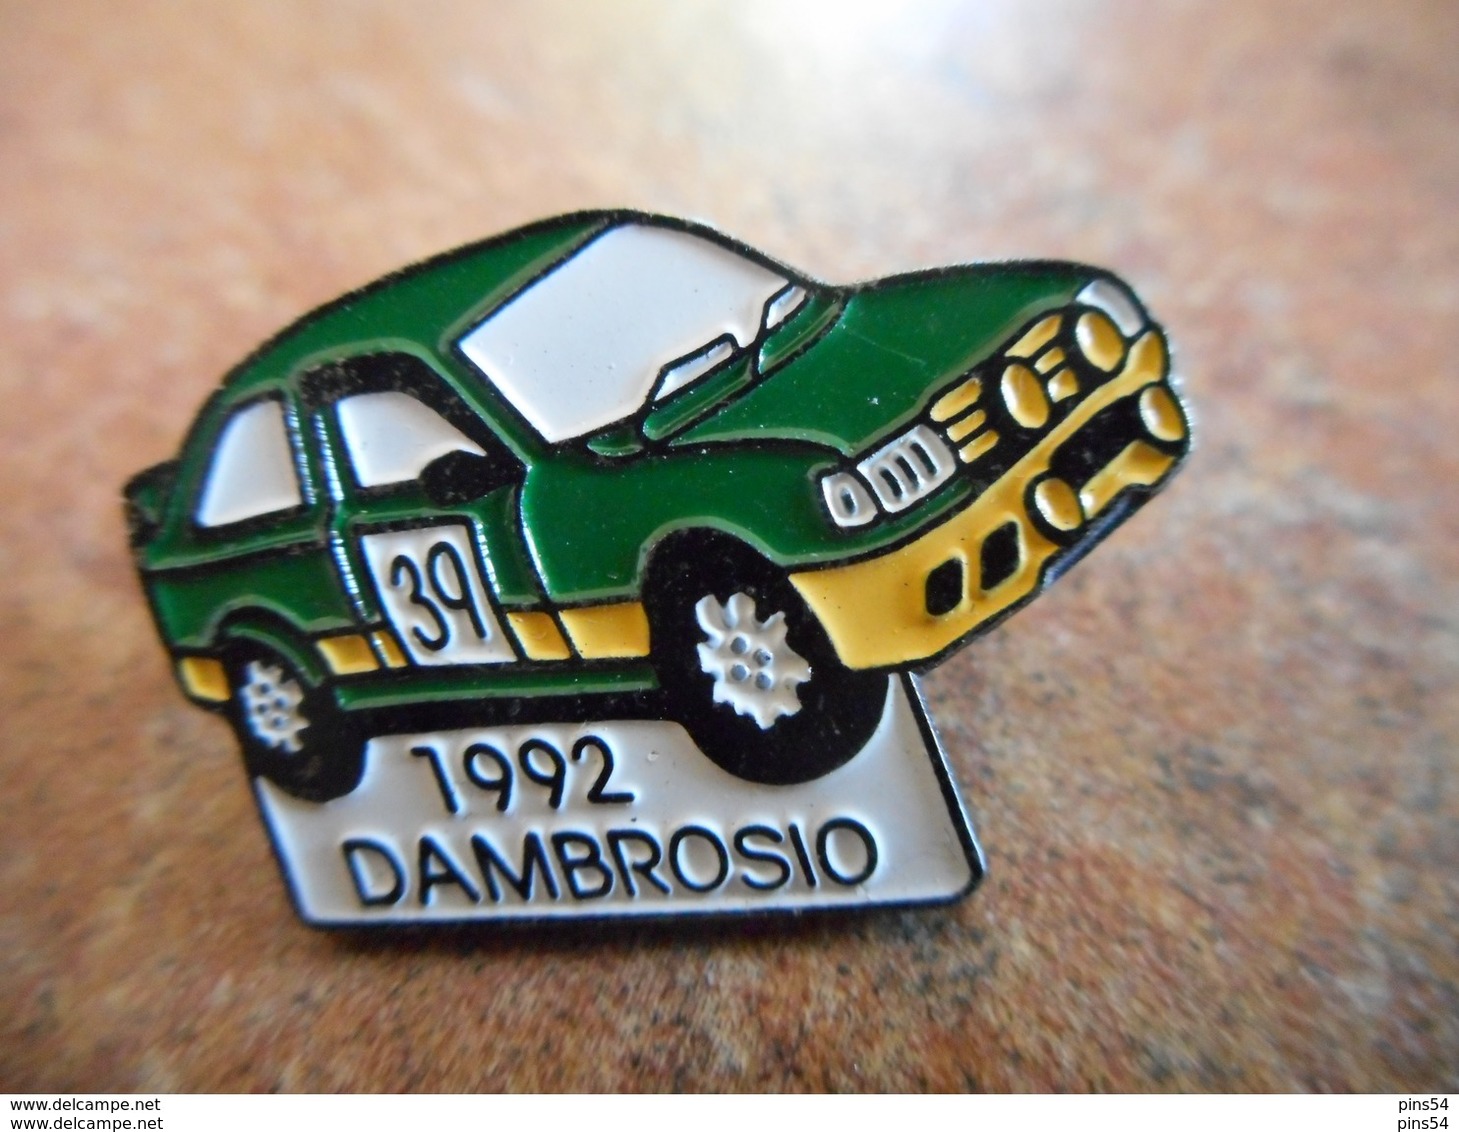 A012 -- Pin's Dambrosio 1992 - Rallye